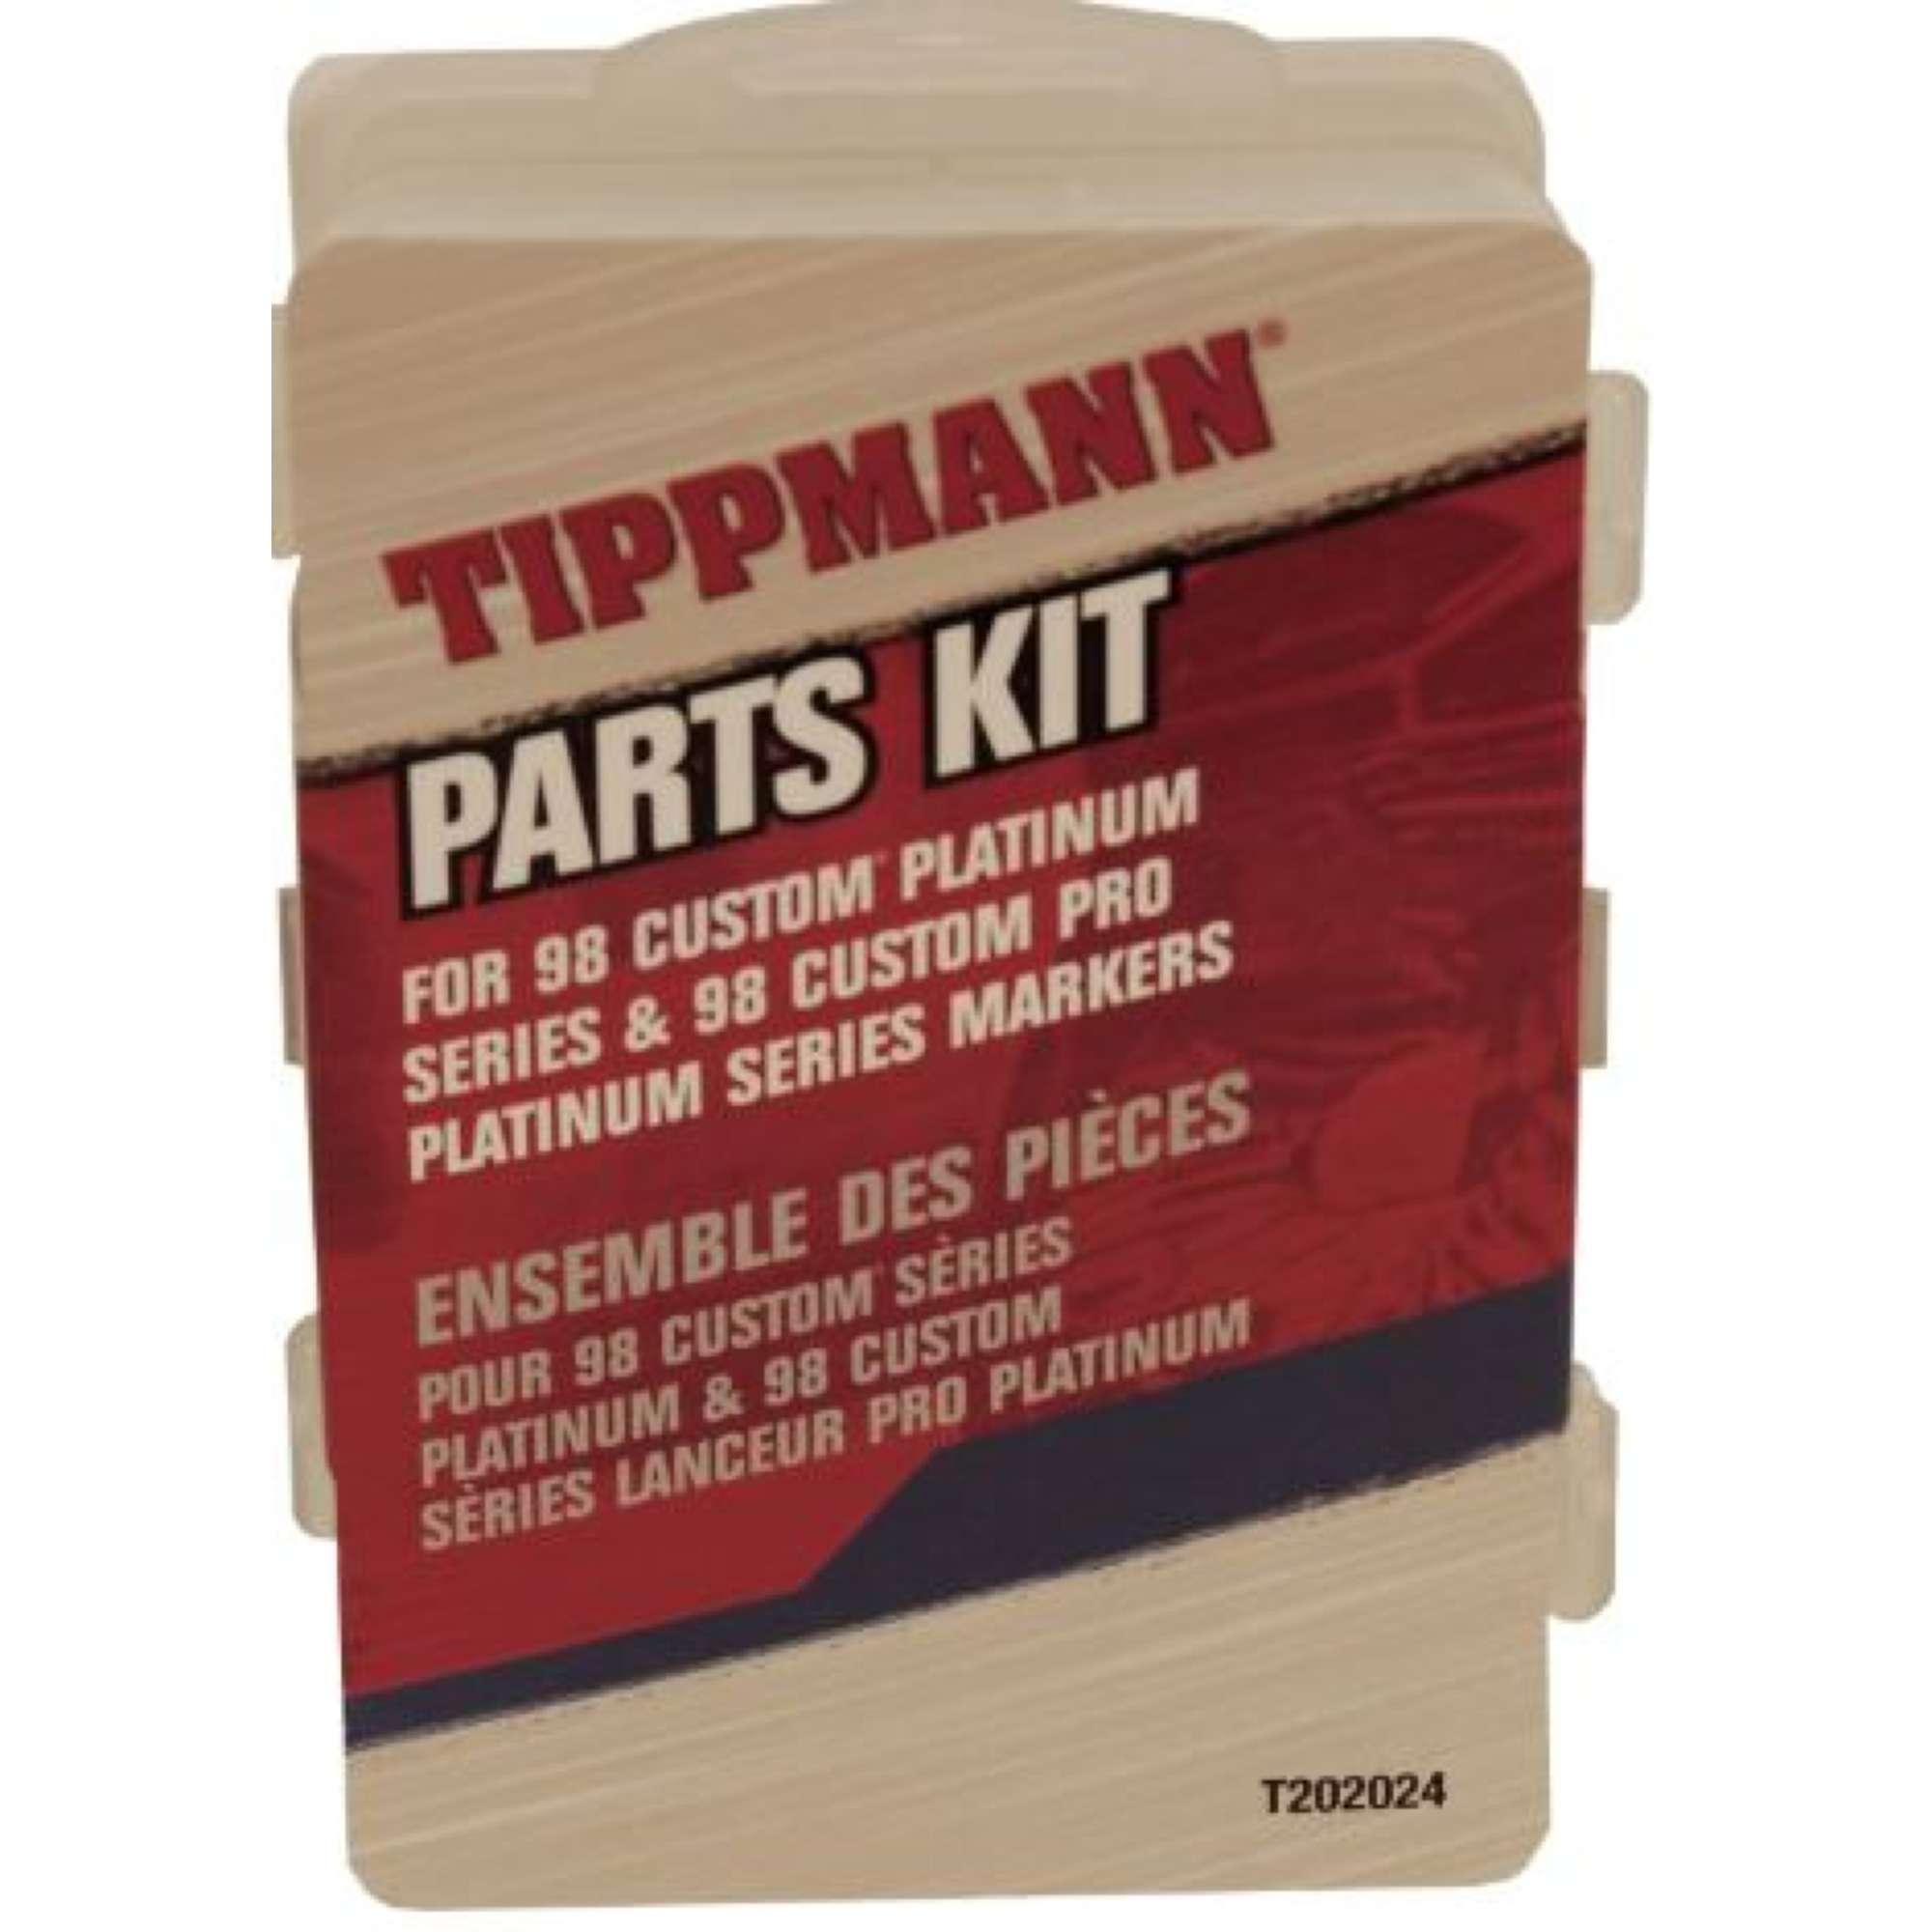 Tippmann #98 Paintball Marker Universal Parts Kit